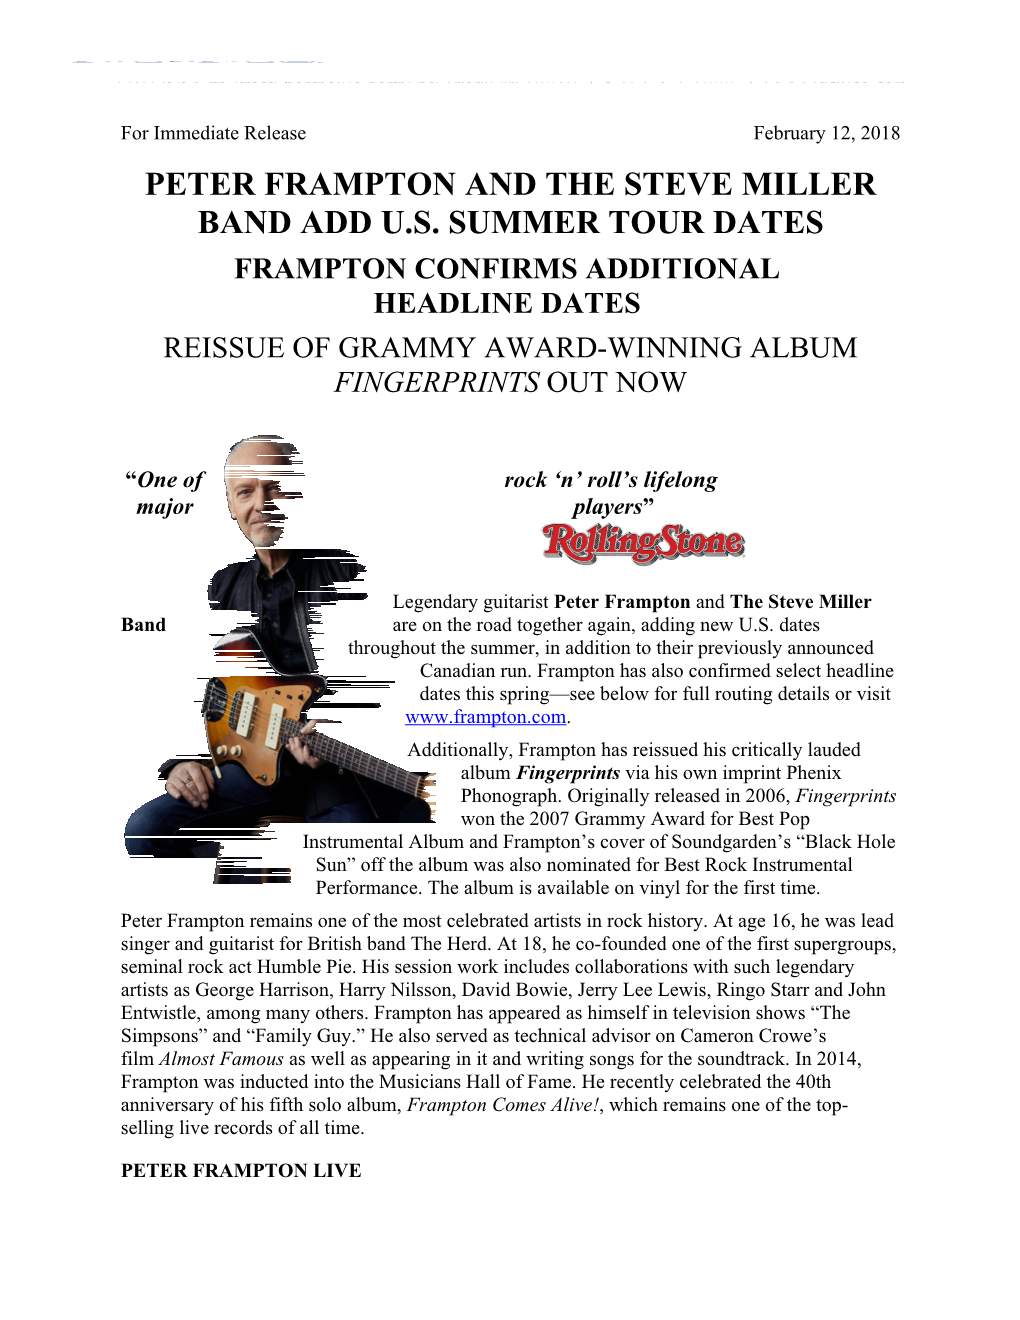 Peter Framptonand the Steve Miller Band Add U.S. Summer Tour Dates